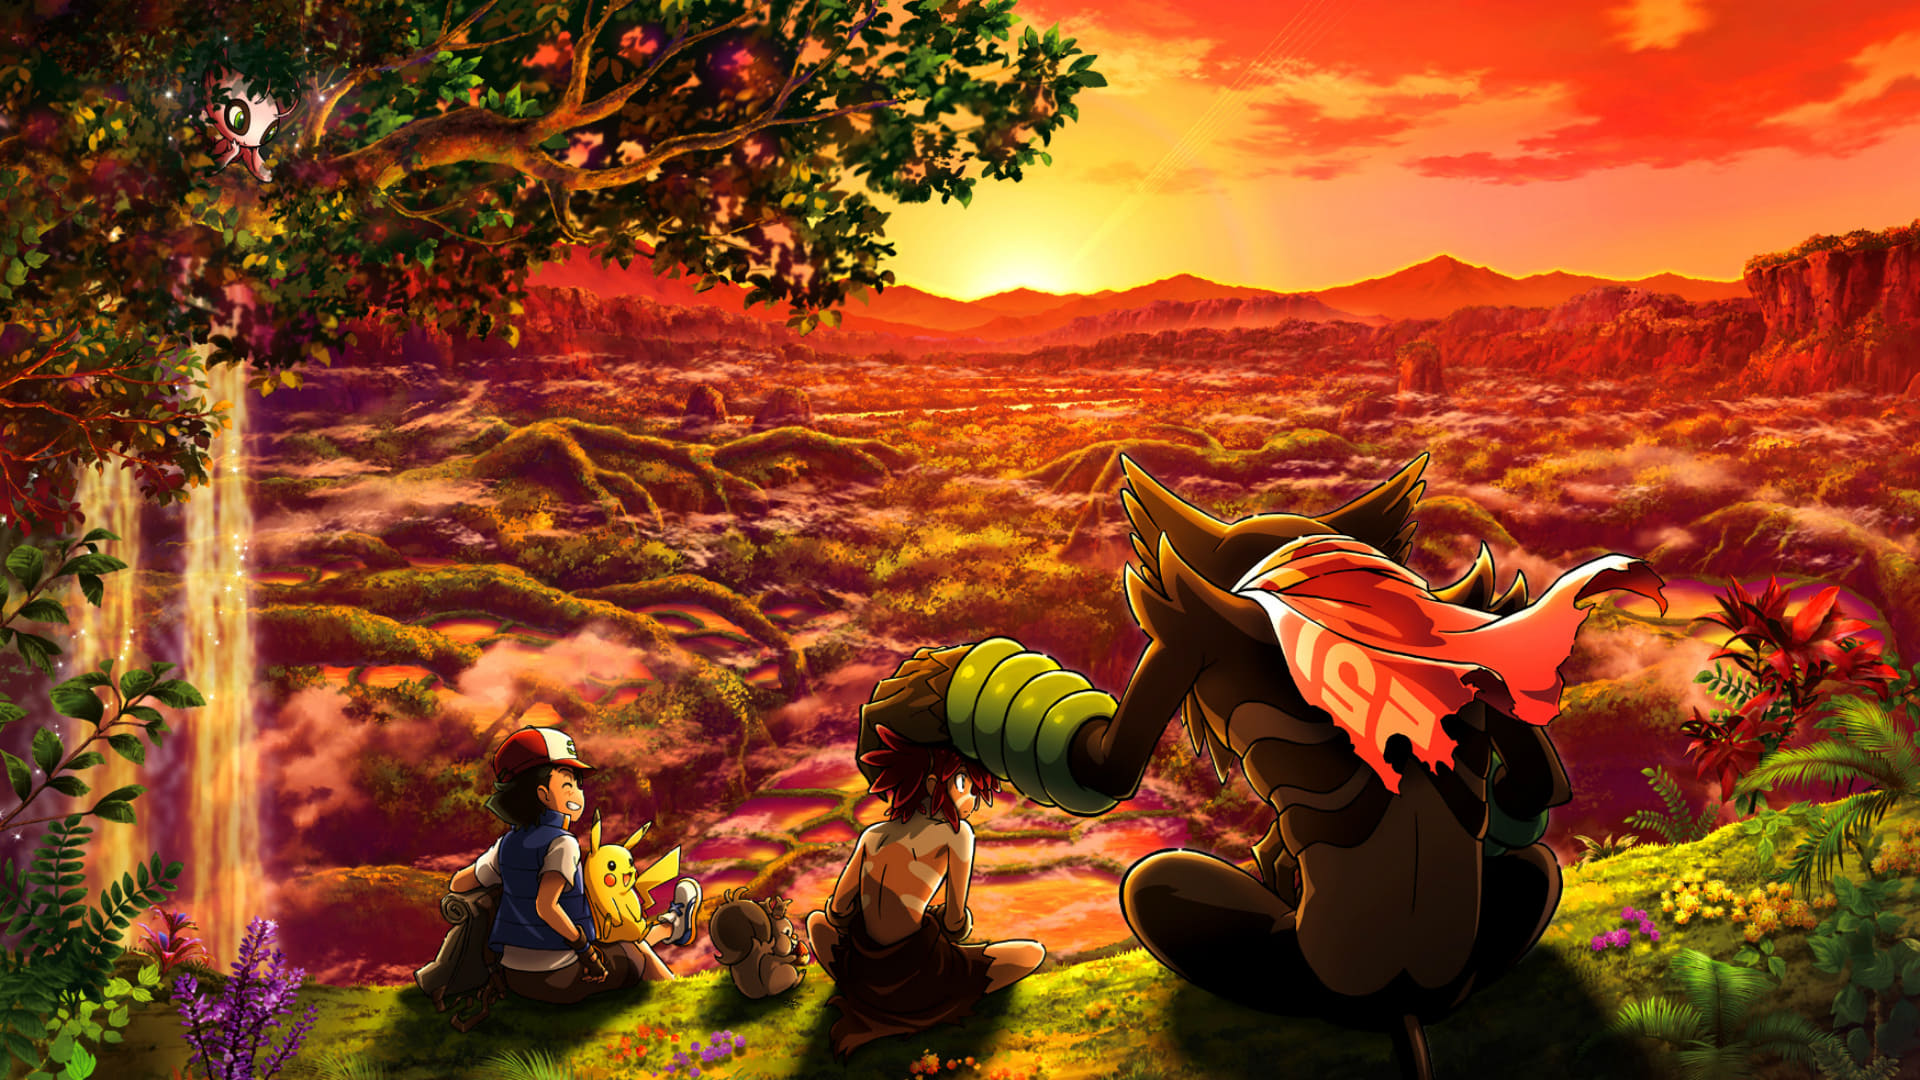 Pokémon the movie: bí mật rừng rậm - Pokémon the movie: secrets of the jungle